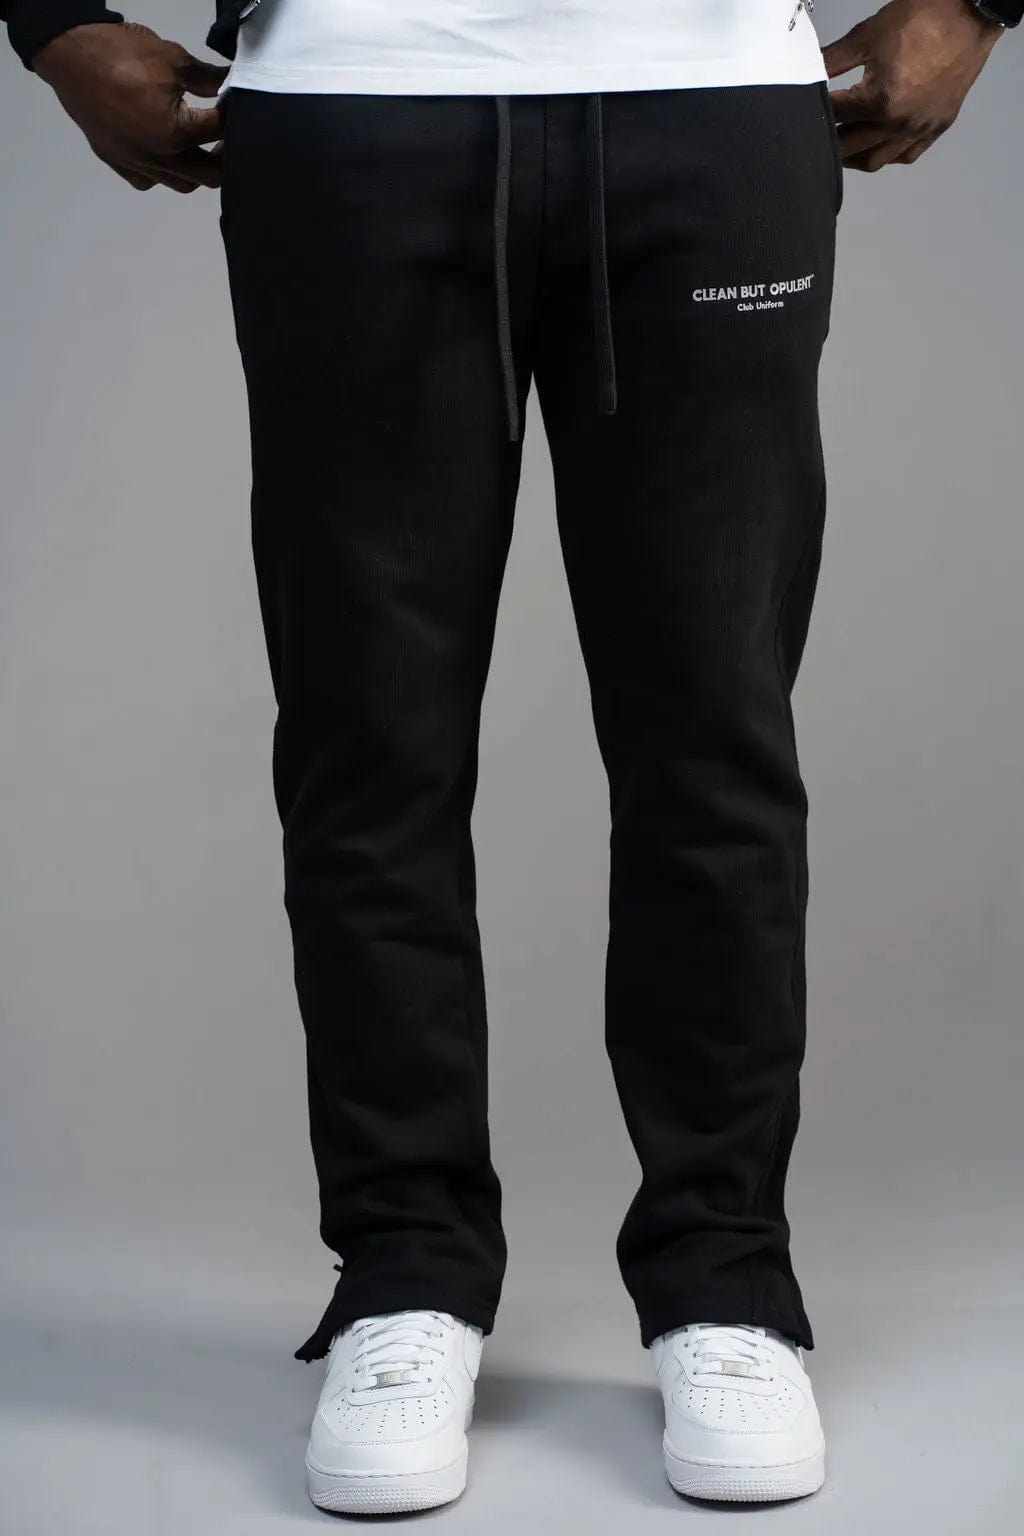 Club Uniform Pants - Black Opulent Apparel